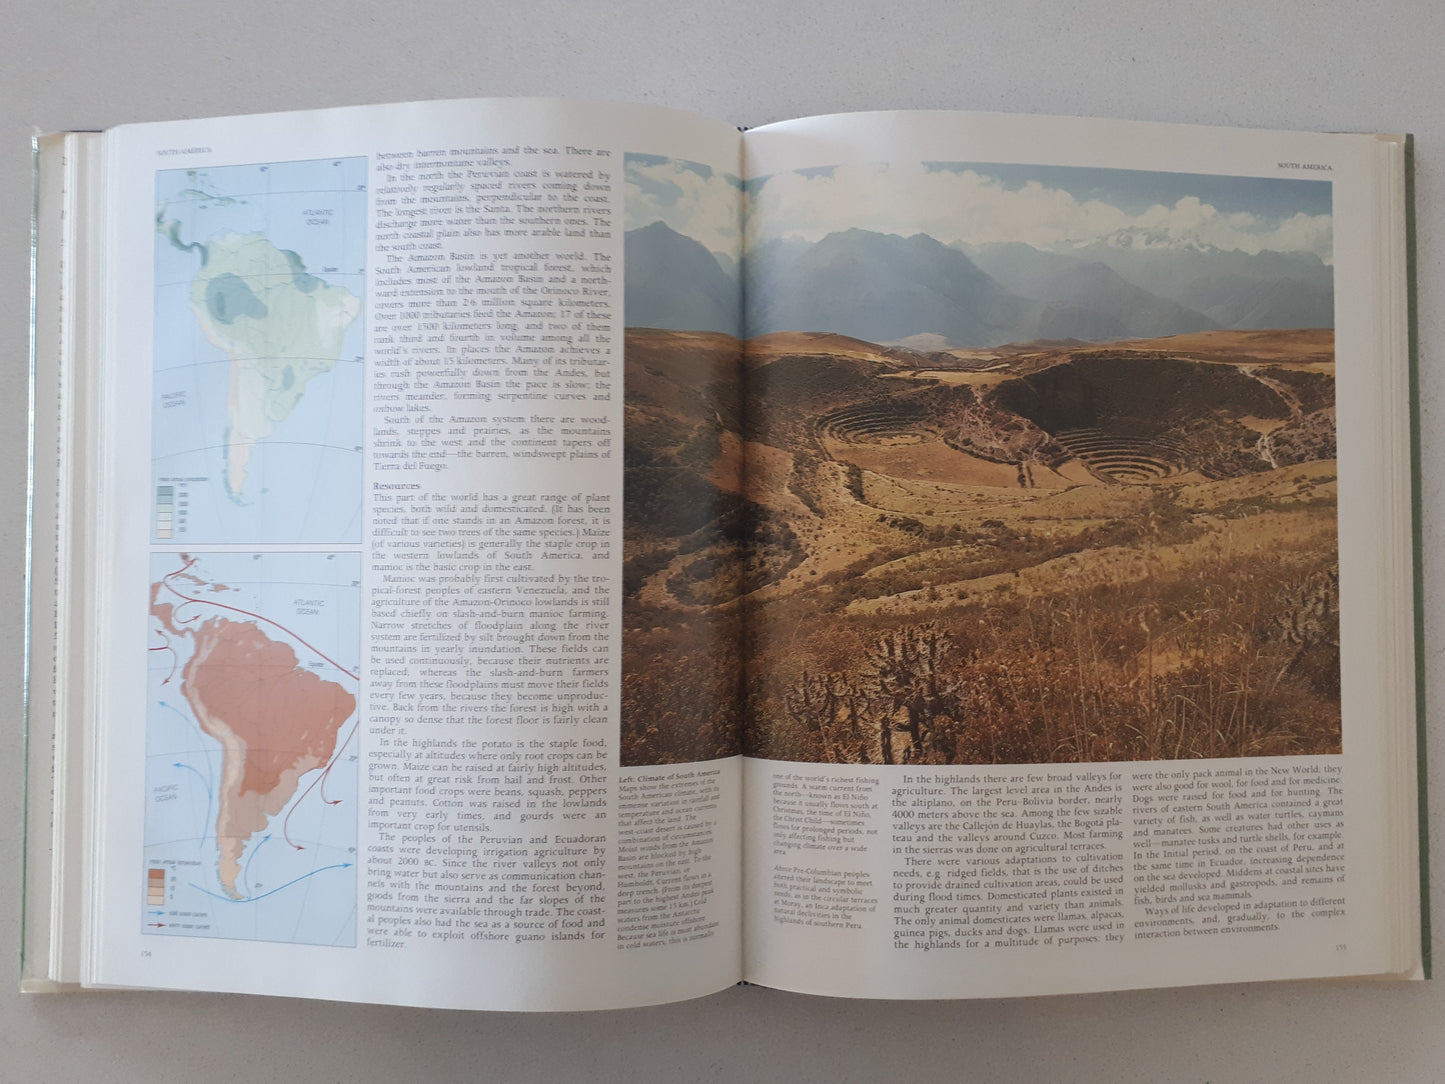 Atlas of Ancient America by Michael Coe, Dean Snow and Elizabeth Benson